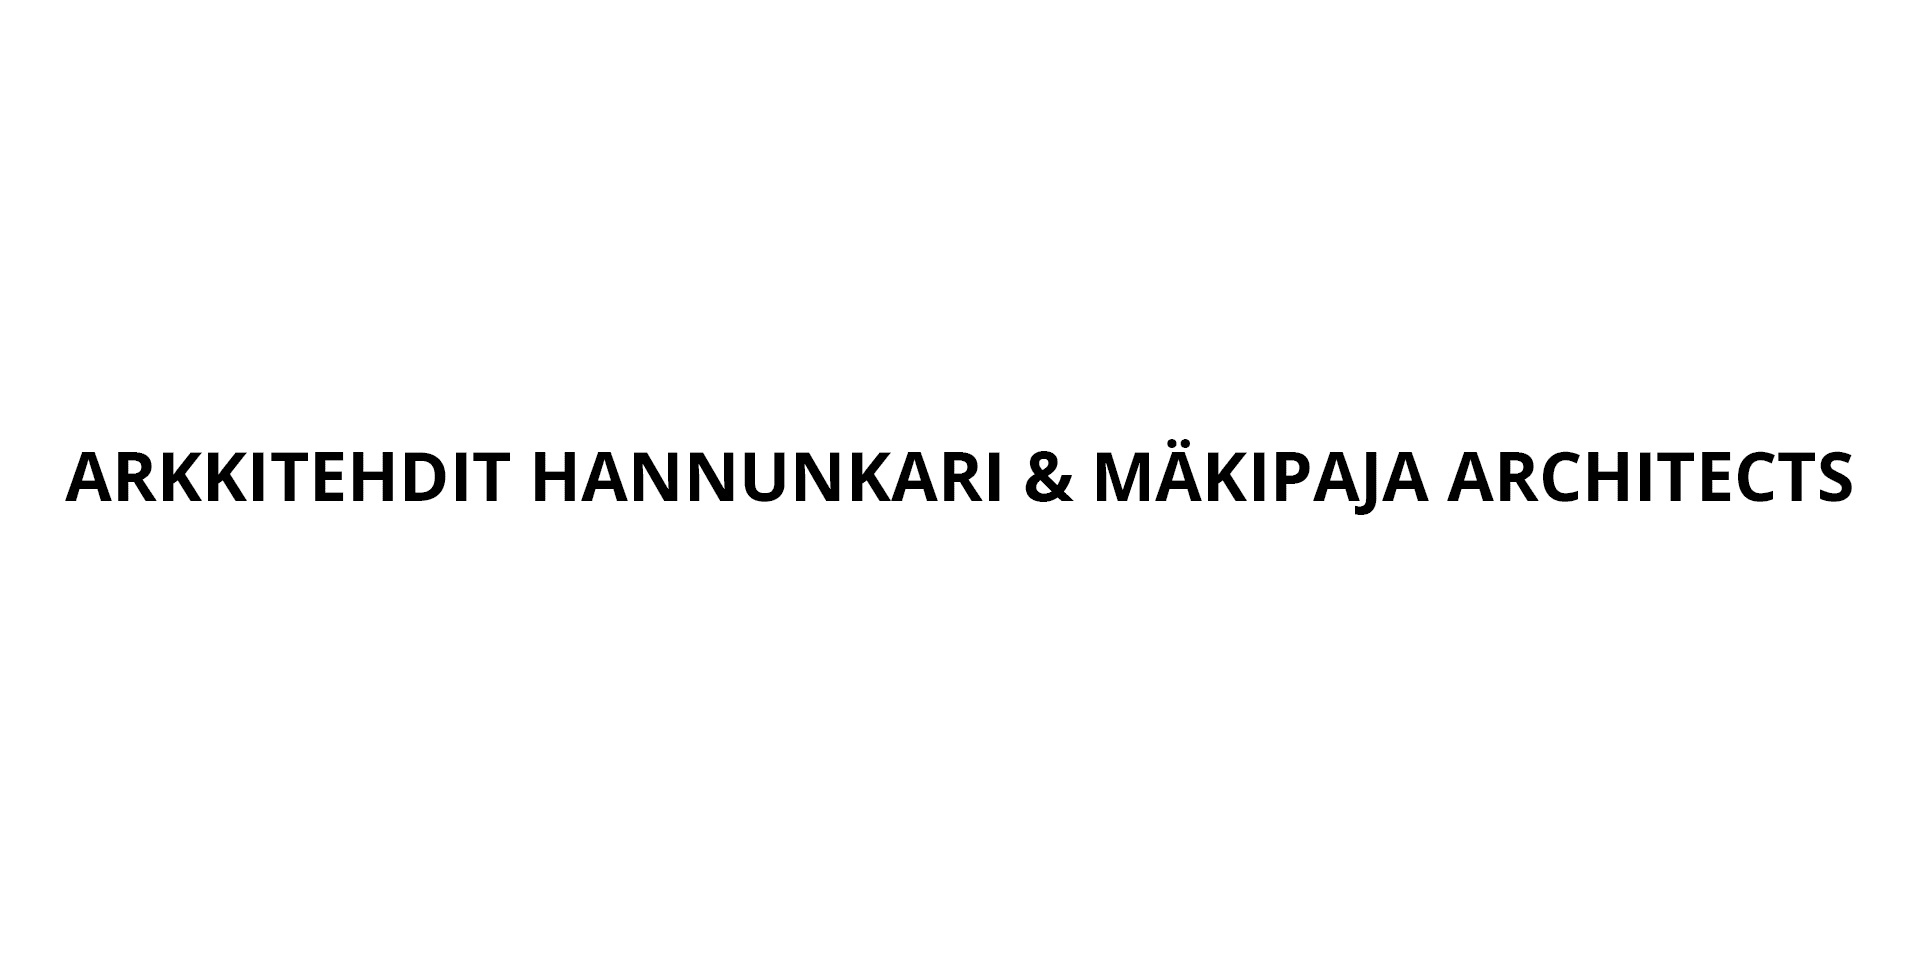 Arkkitehdit Hannunkari & Mäkipaja